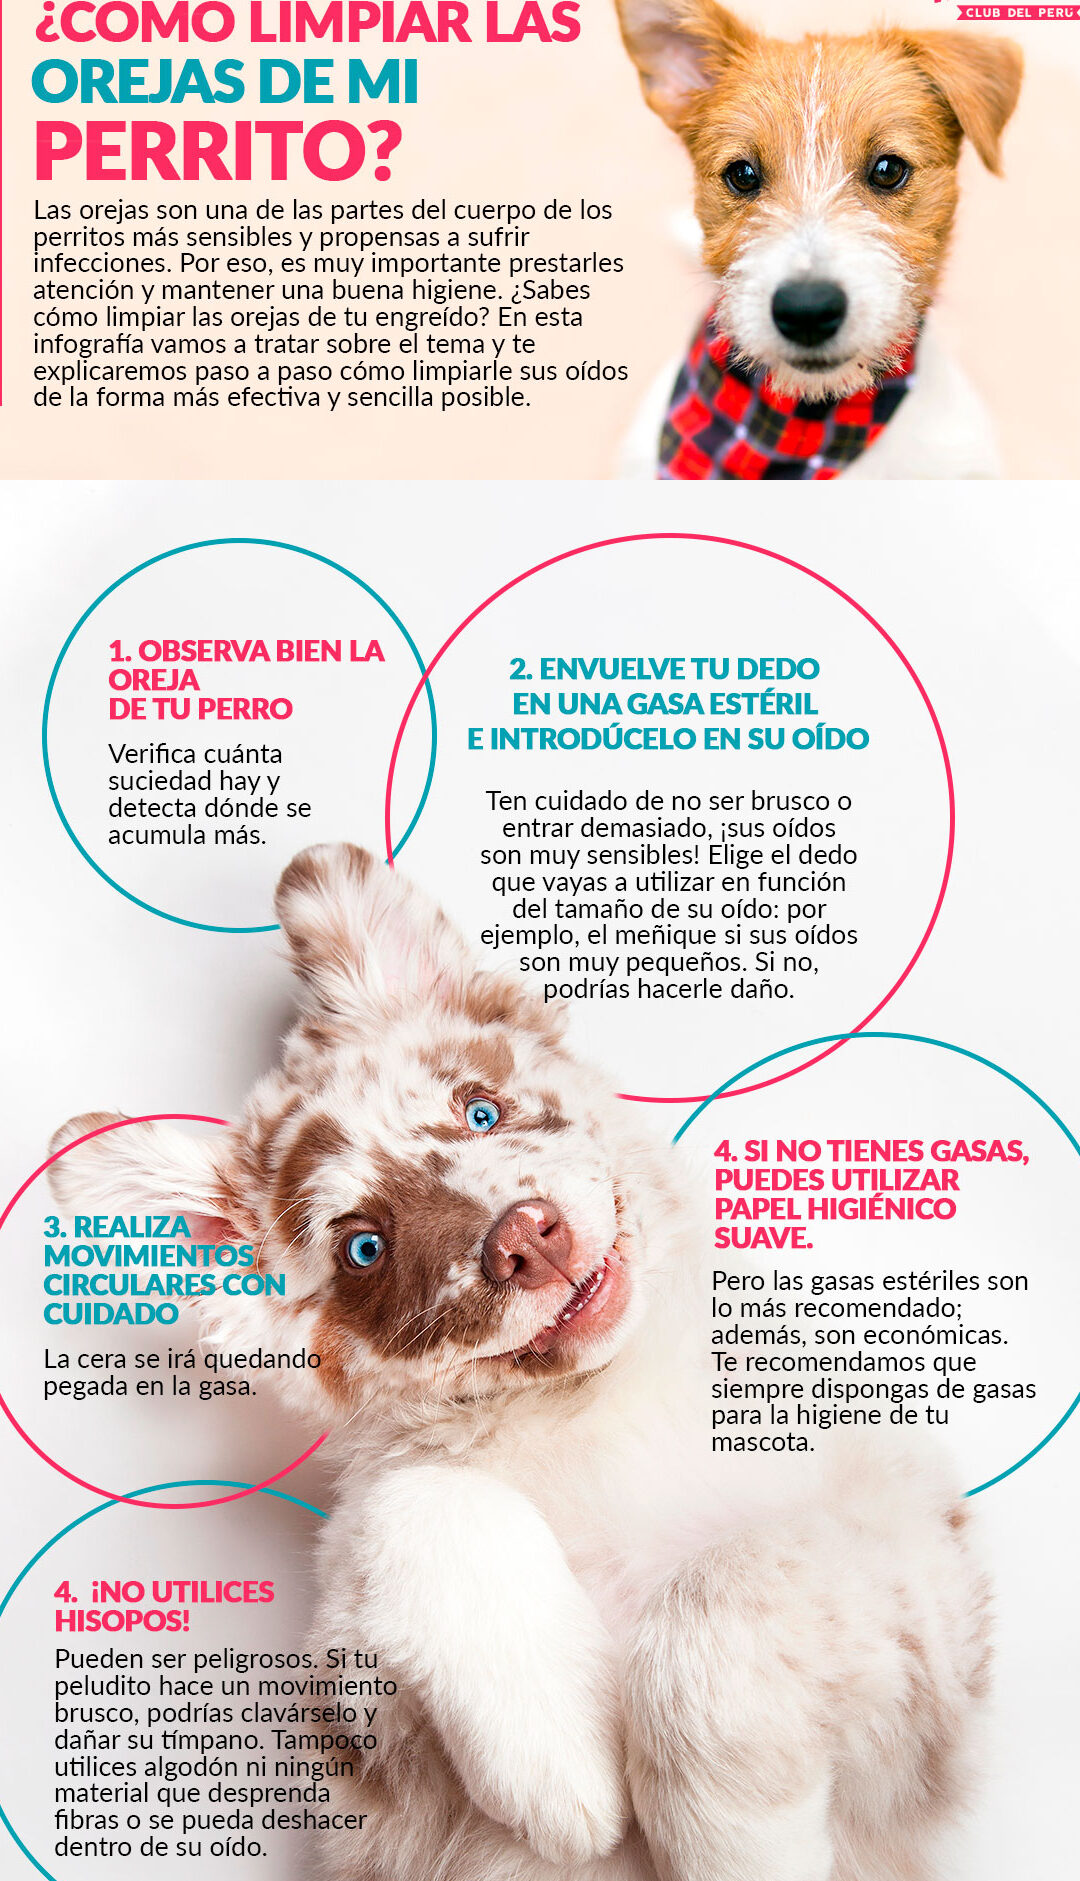 Consejos para limpiar con seguridad las orejas de tu perro